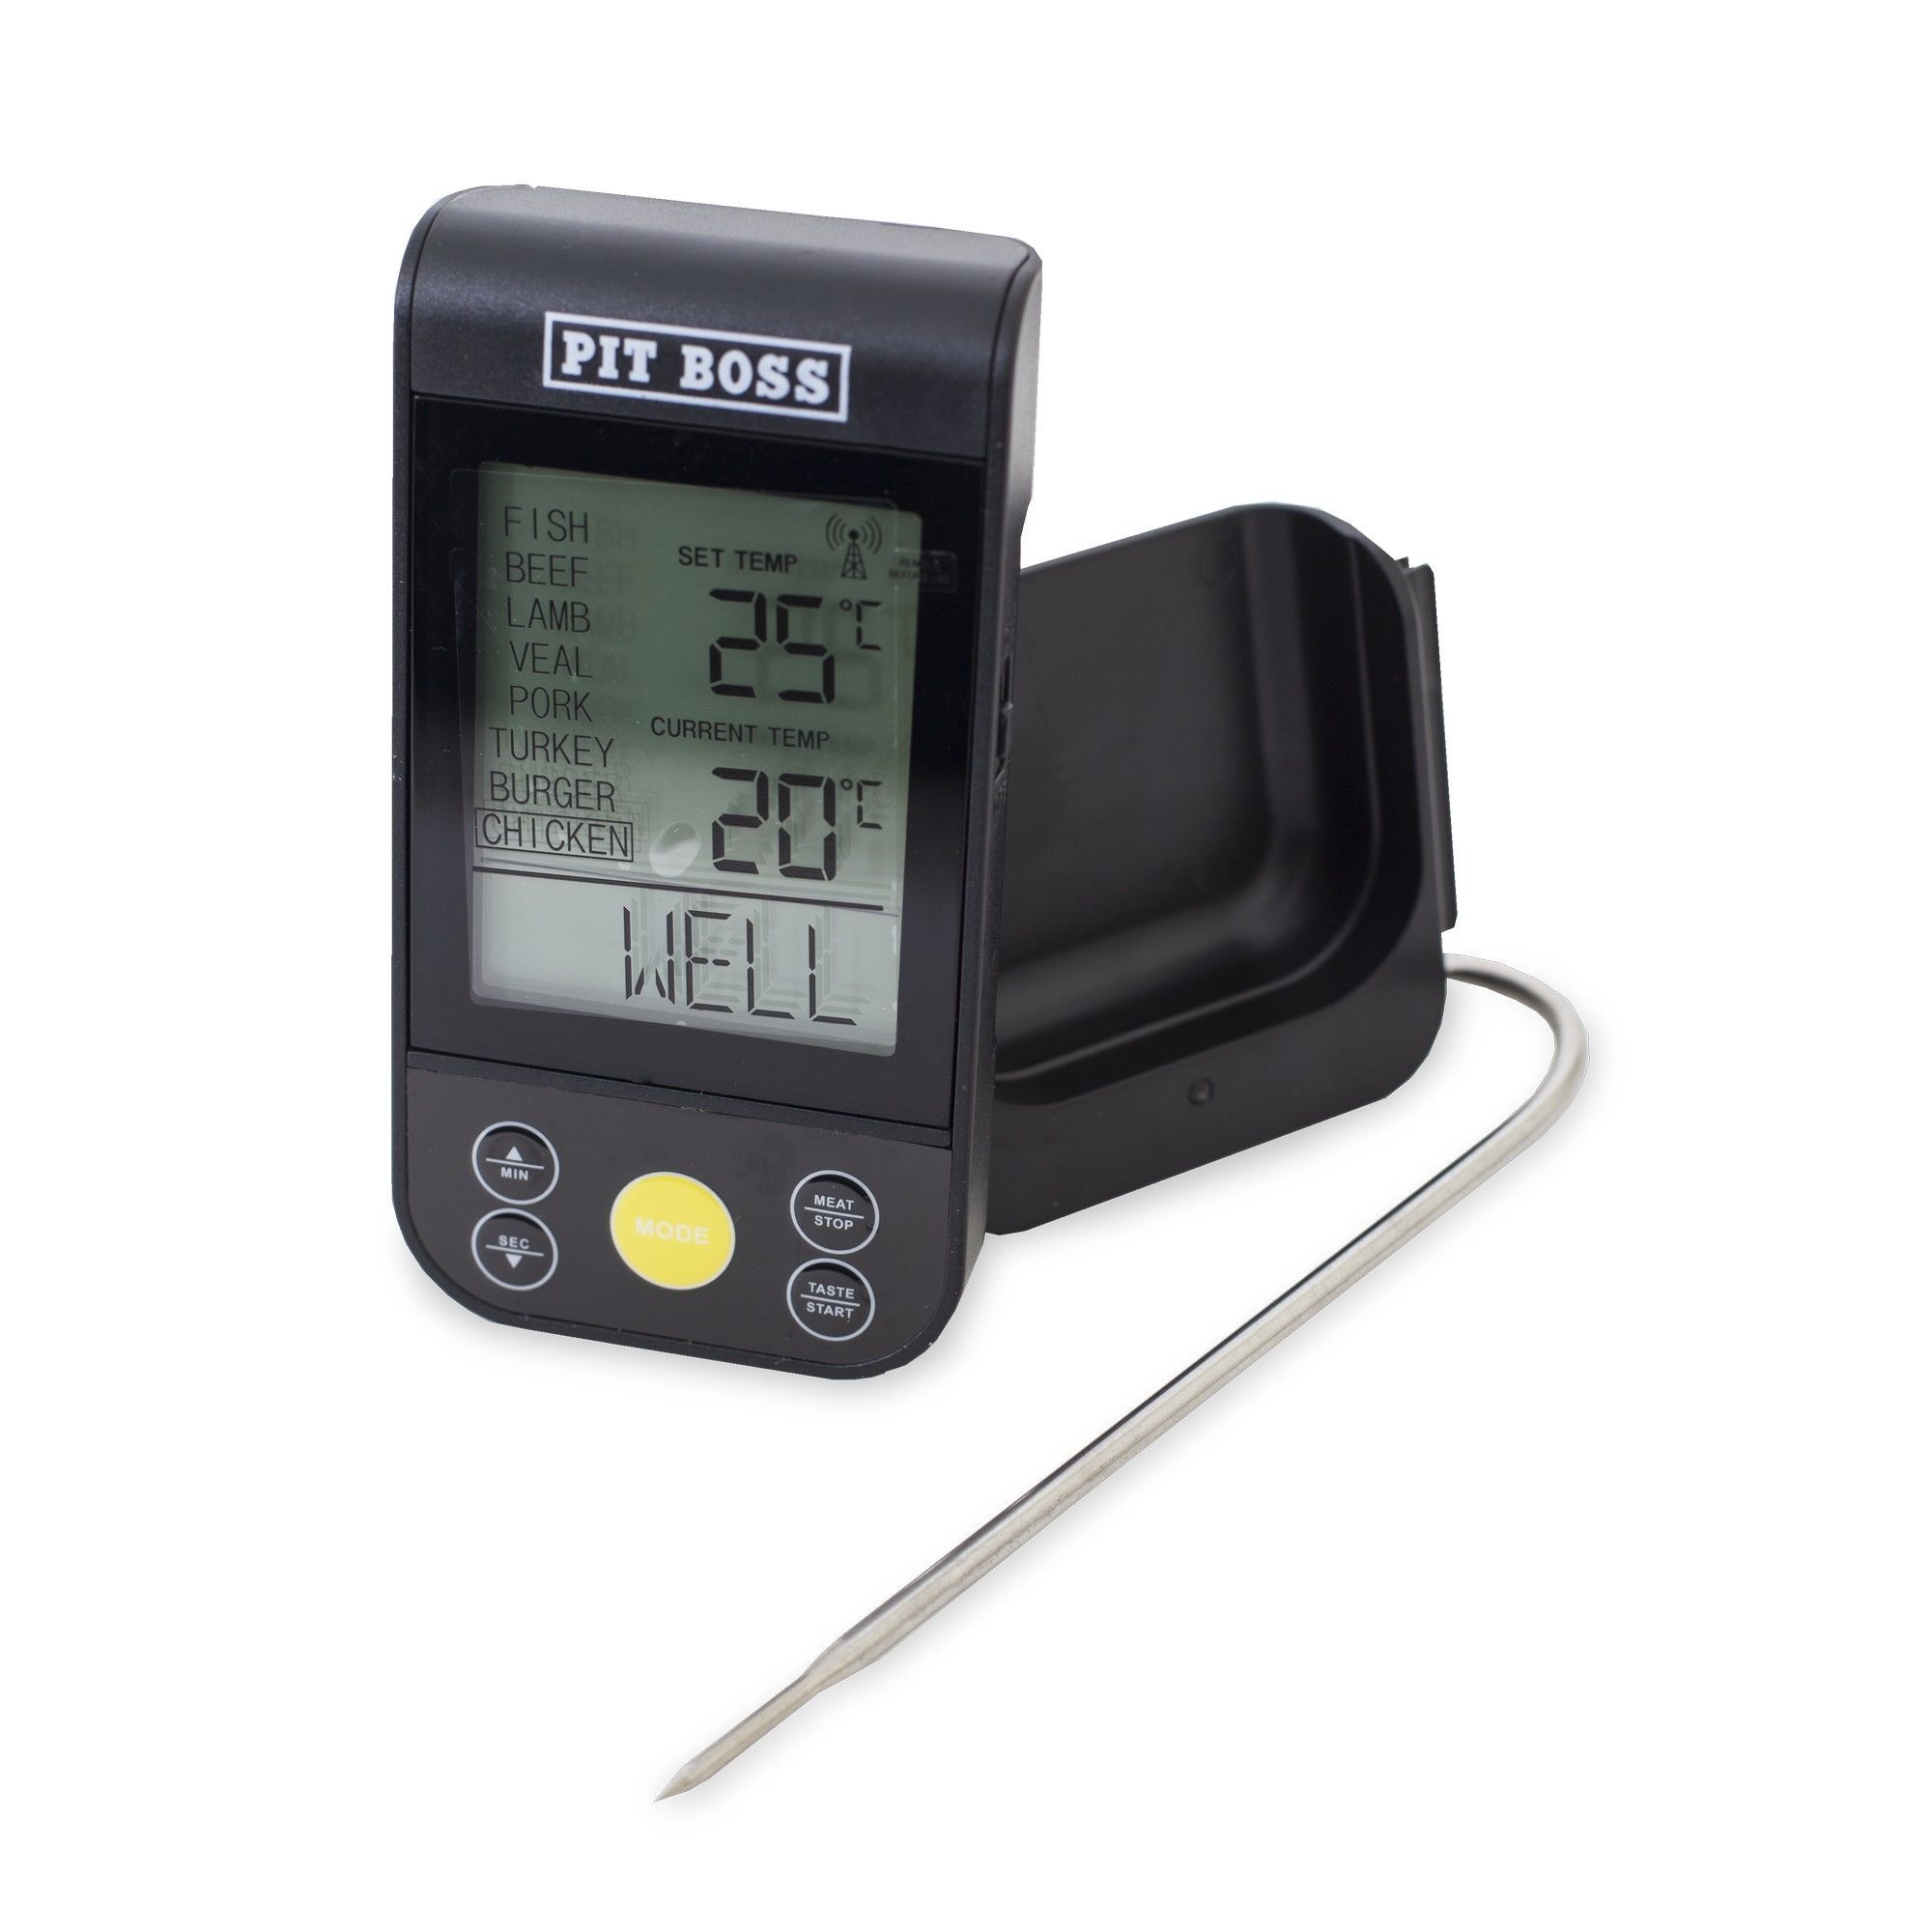 Thermomètre de barbecue à distance sans fil de PIT BOSS